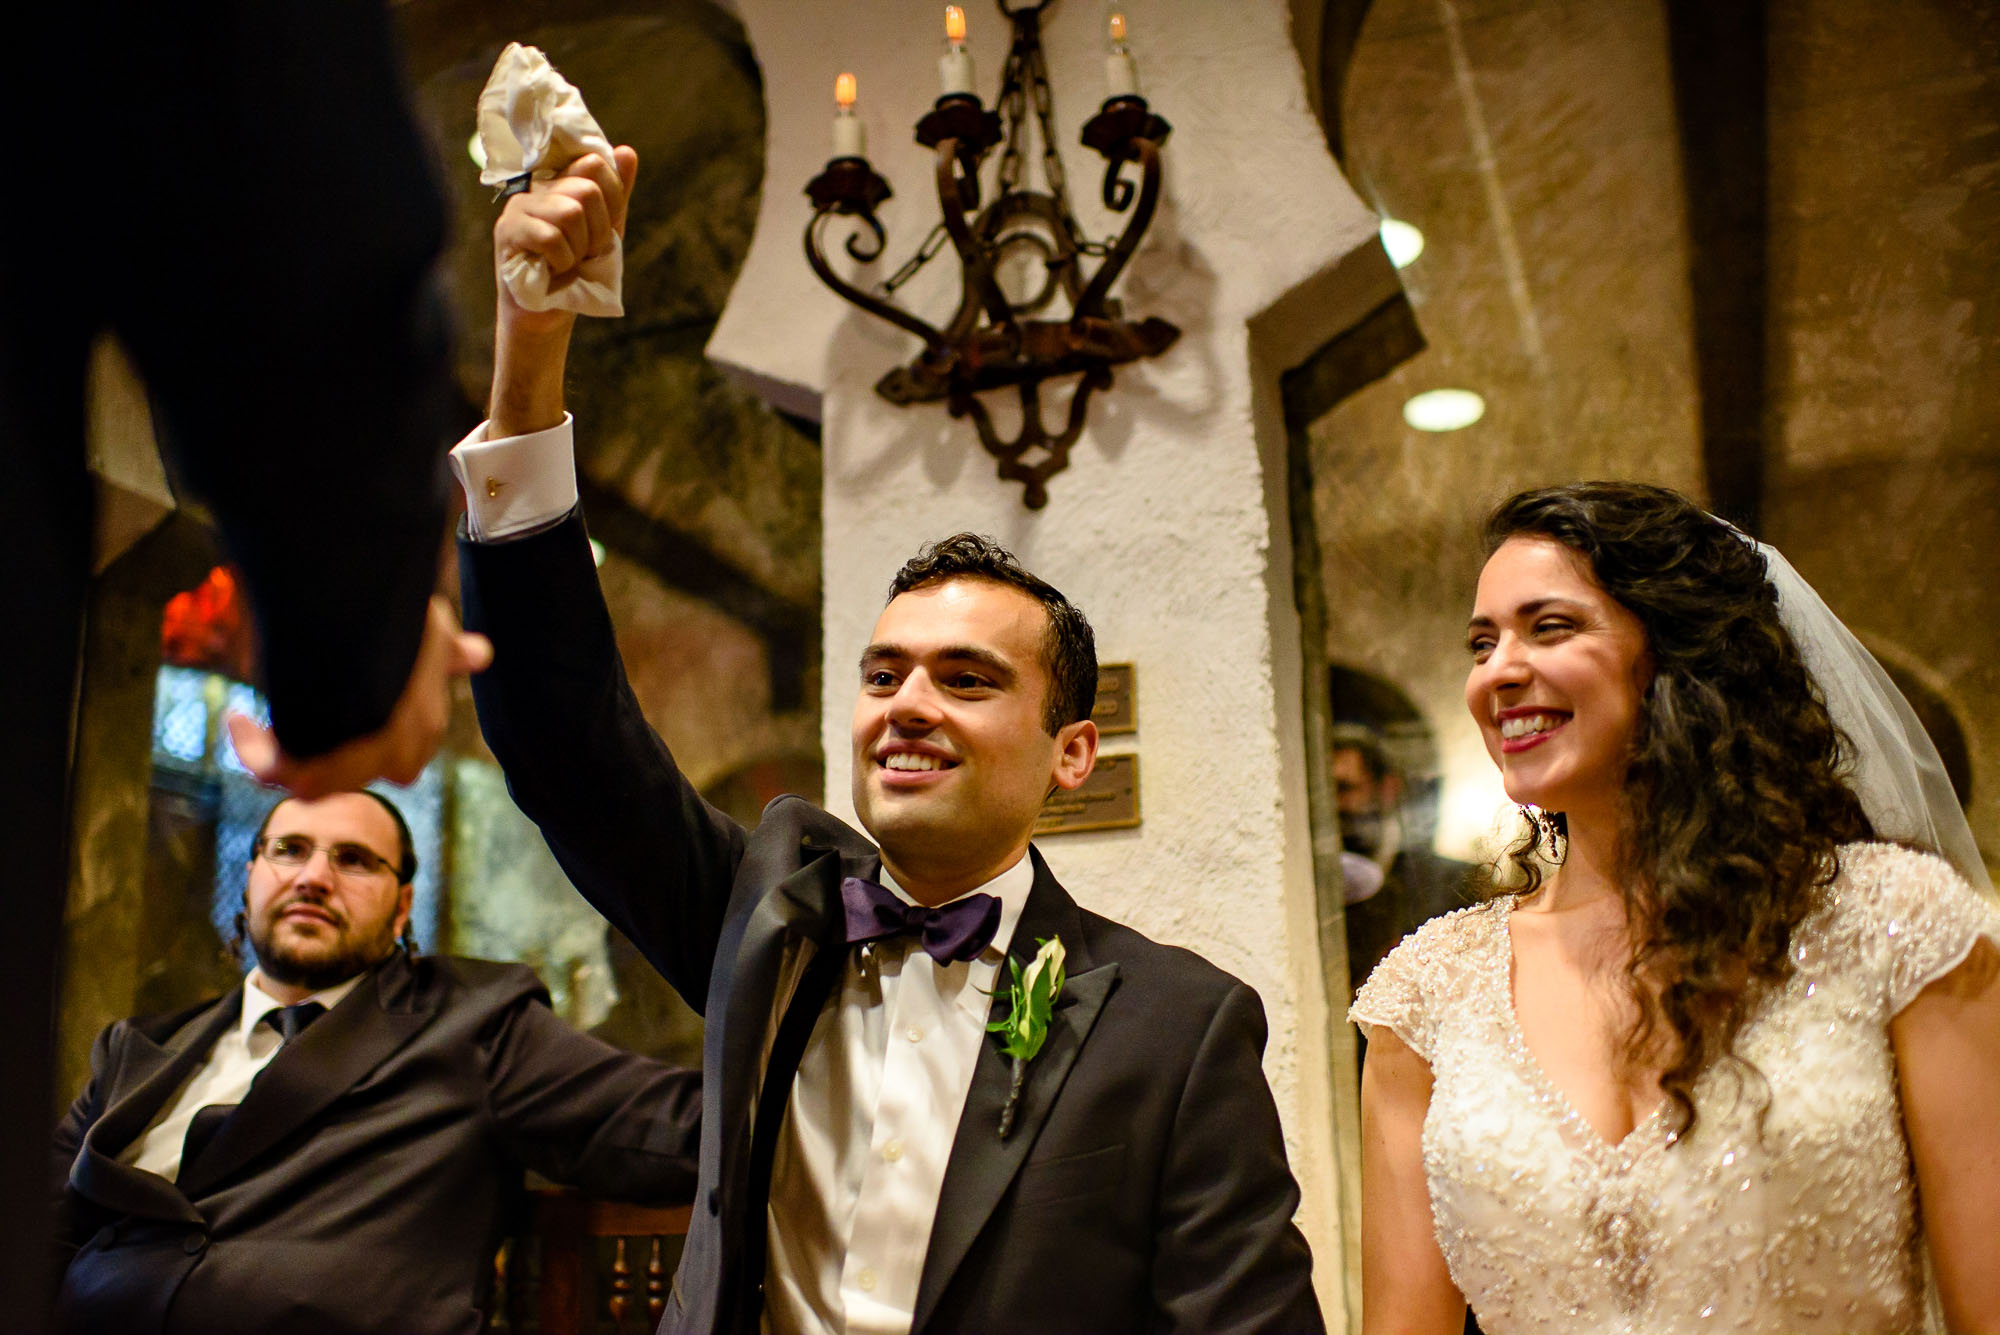 The Sephardic Temple wedding Ketubah signing